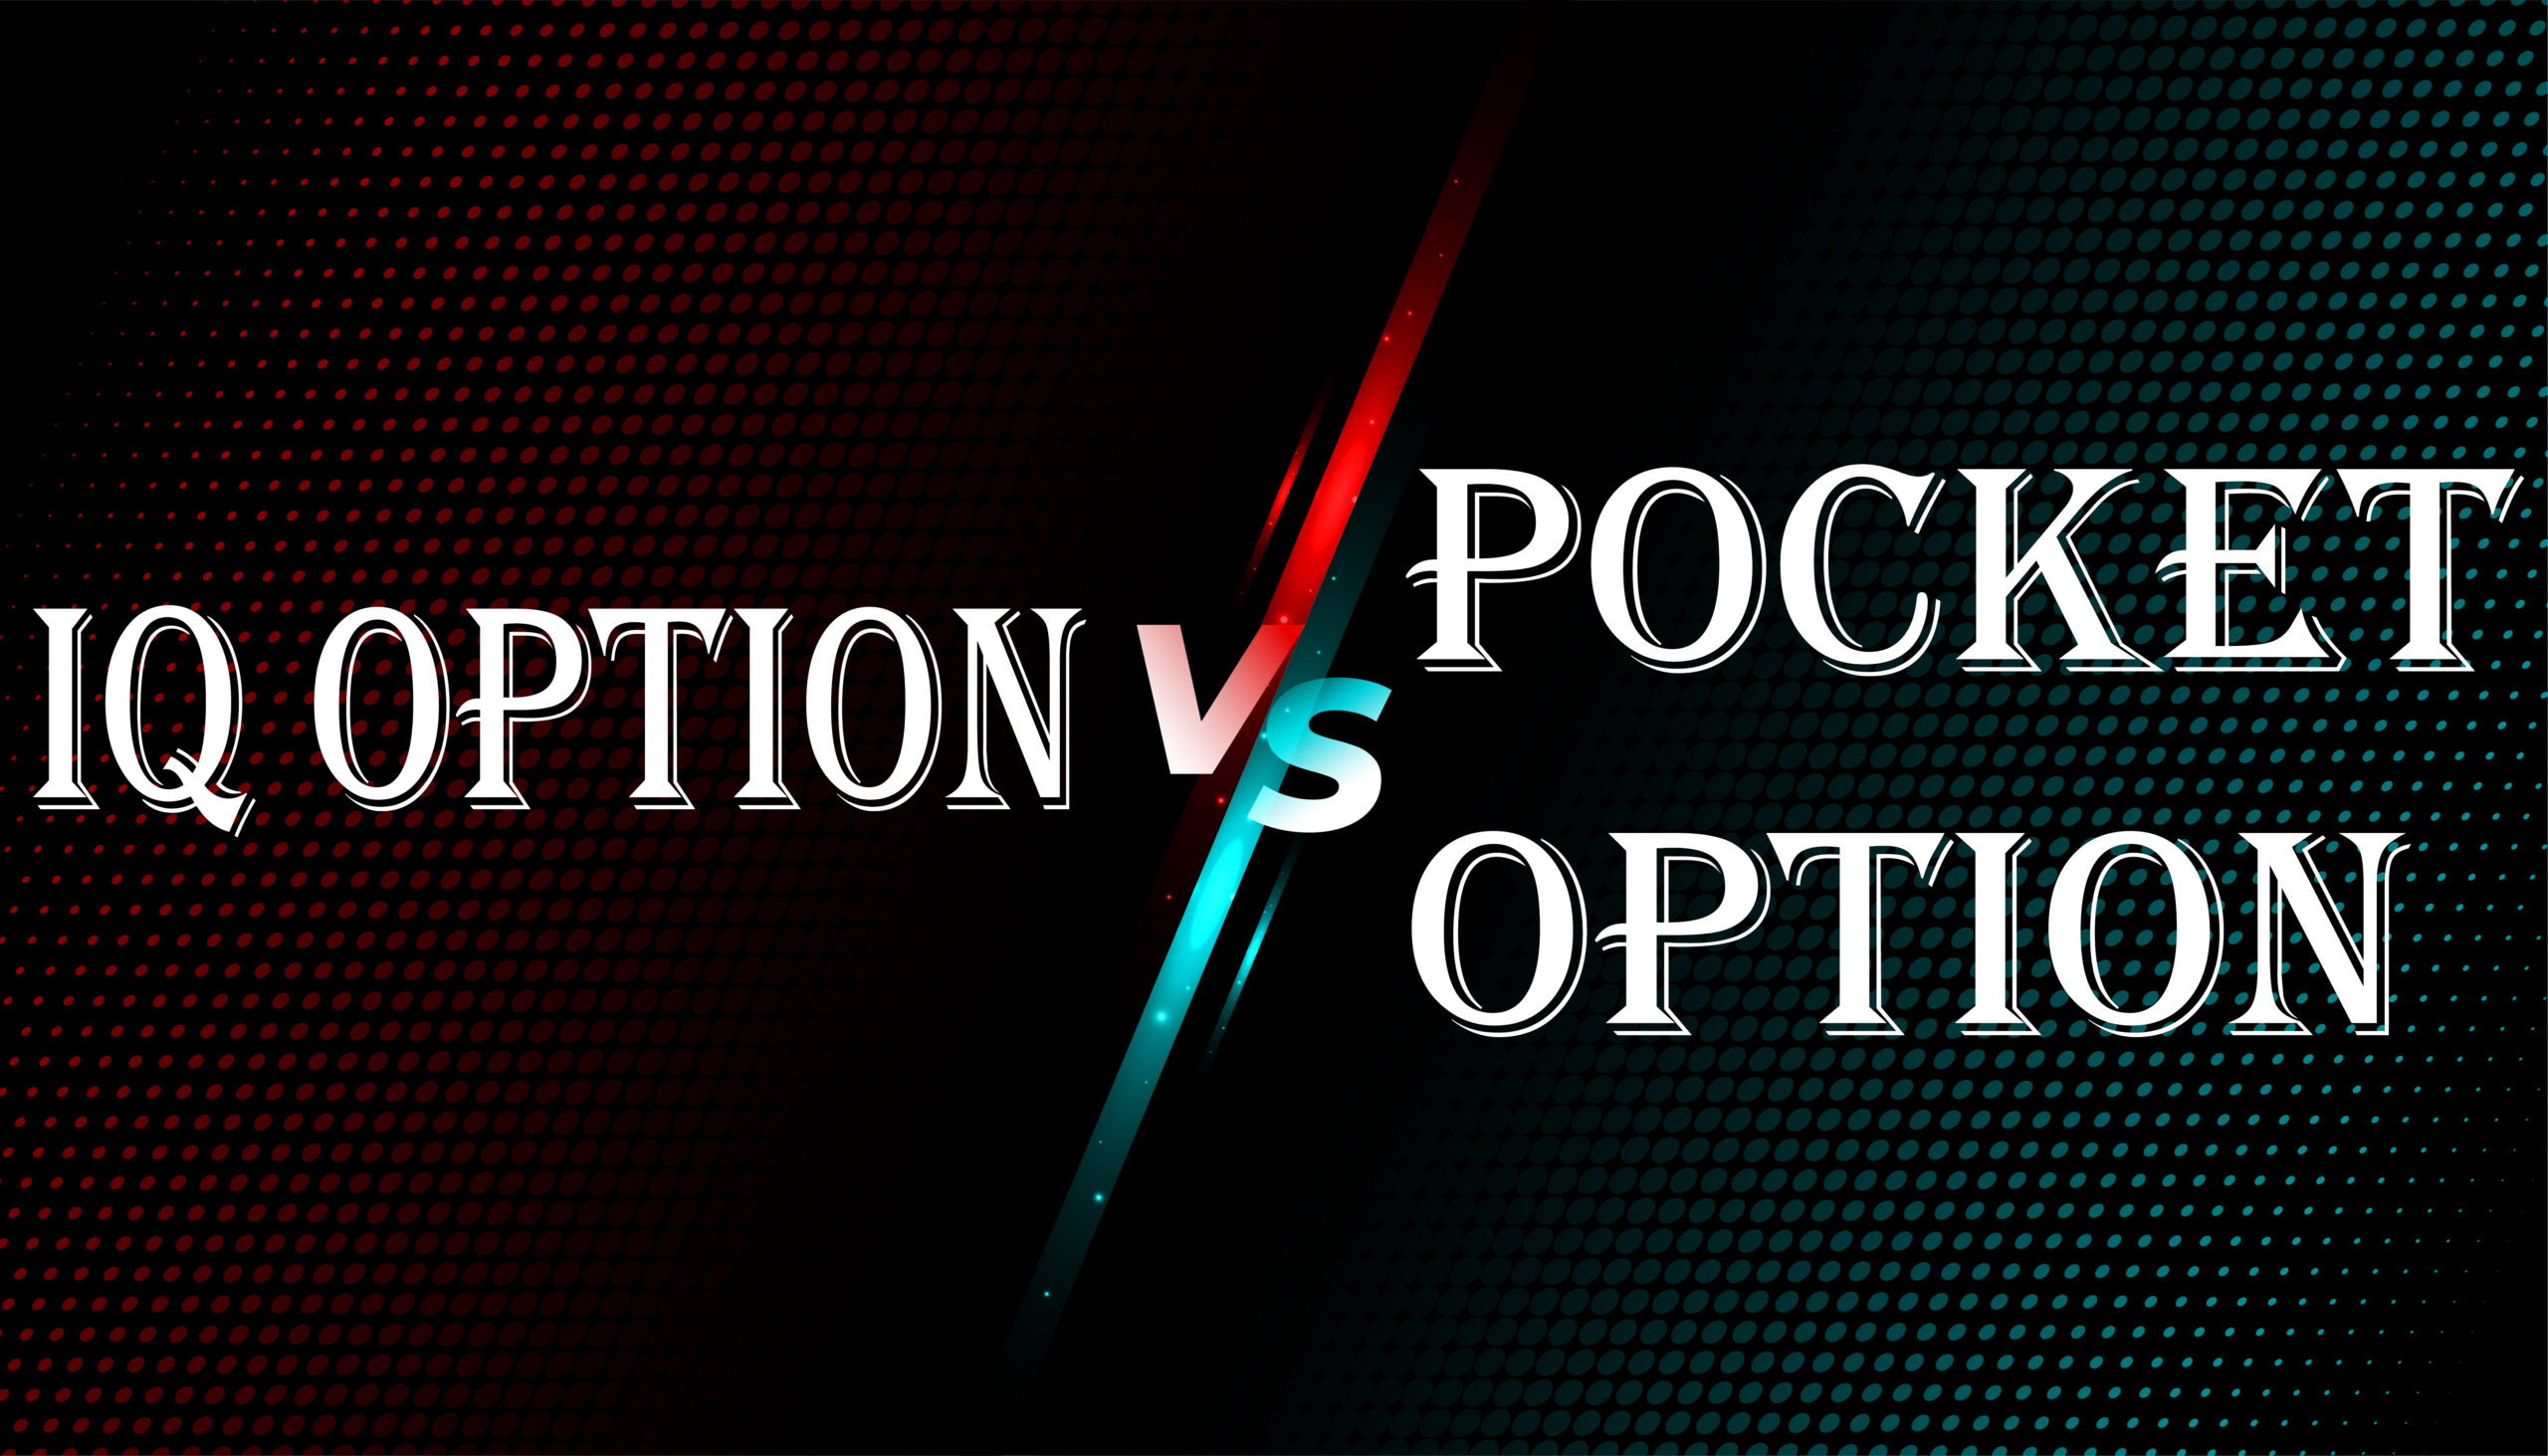 IQ Option ou Pocket Option: Qual a Melhor Plataforma